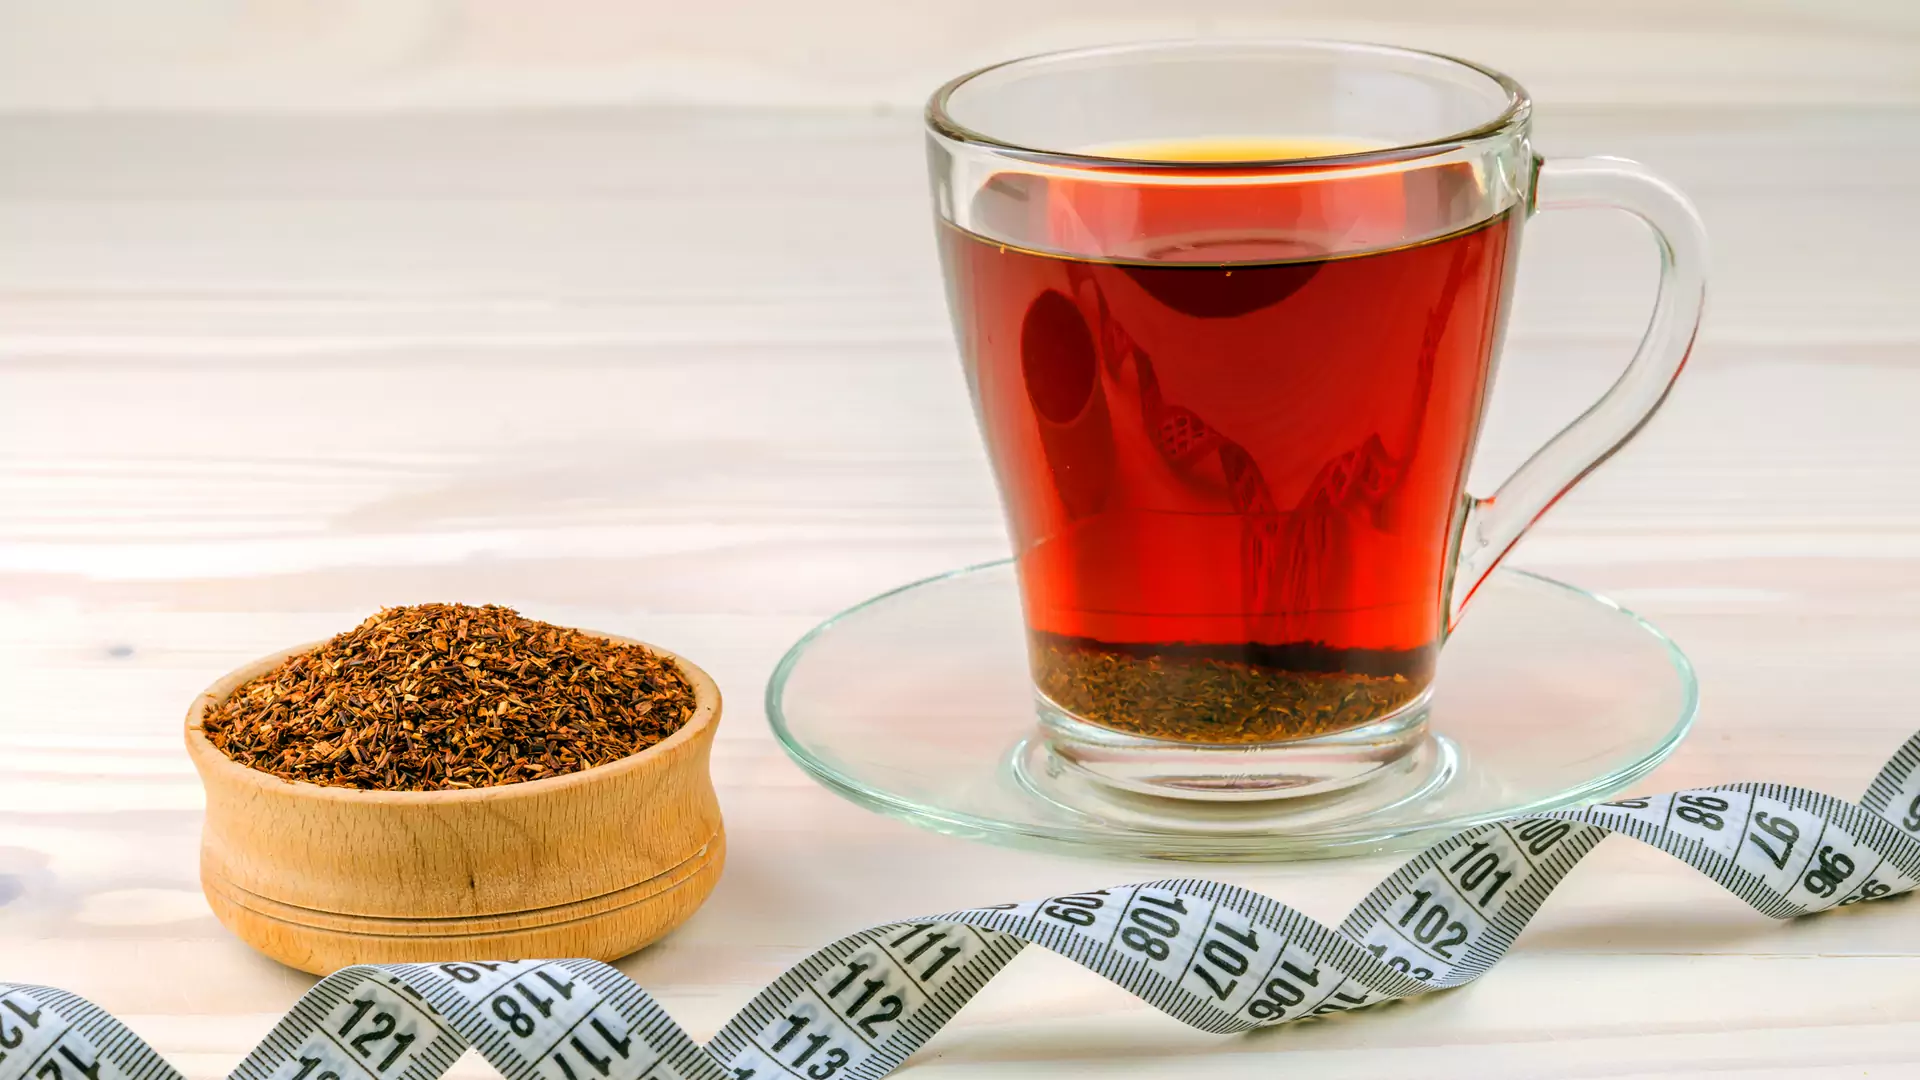 Ta herbata pomoże ci schudnąć i ureguluje trawienie. Kosztuje niewiele